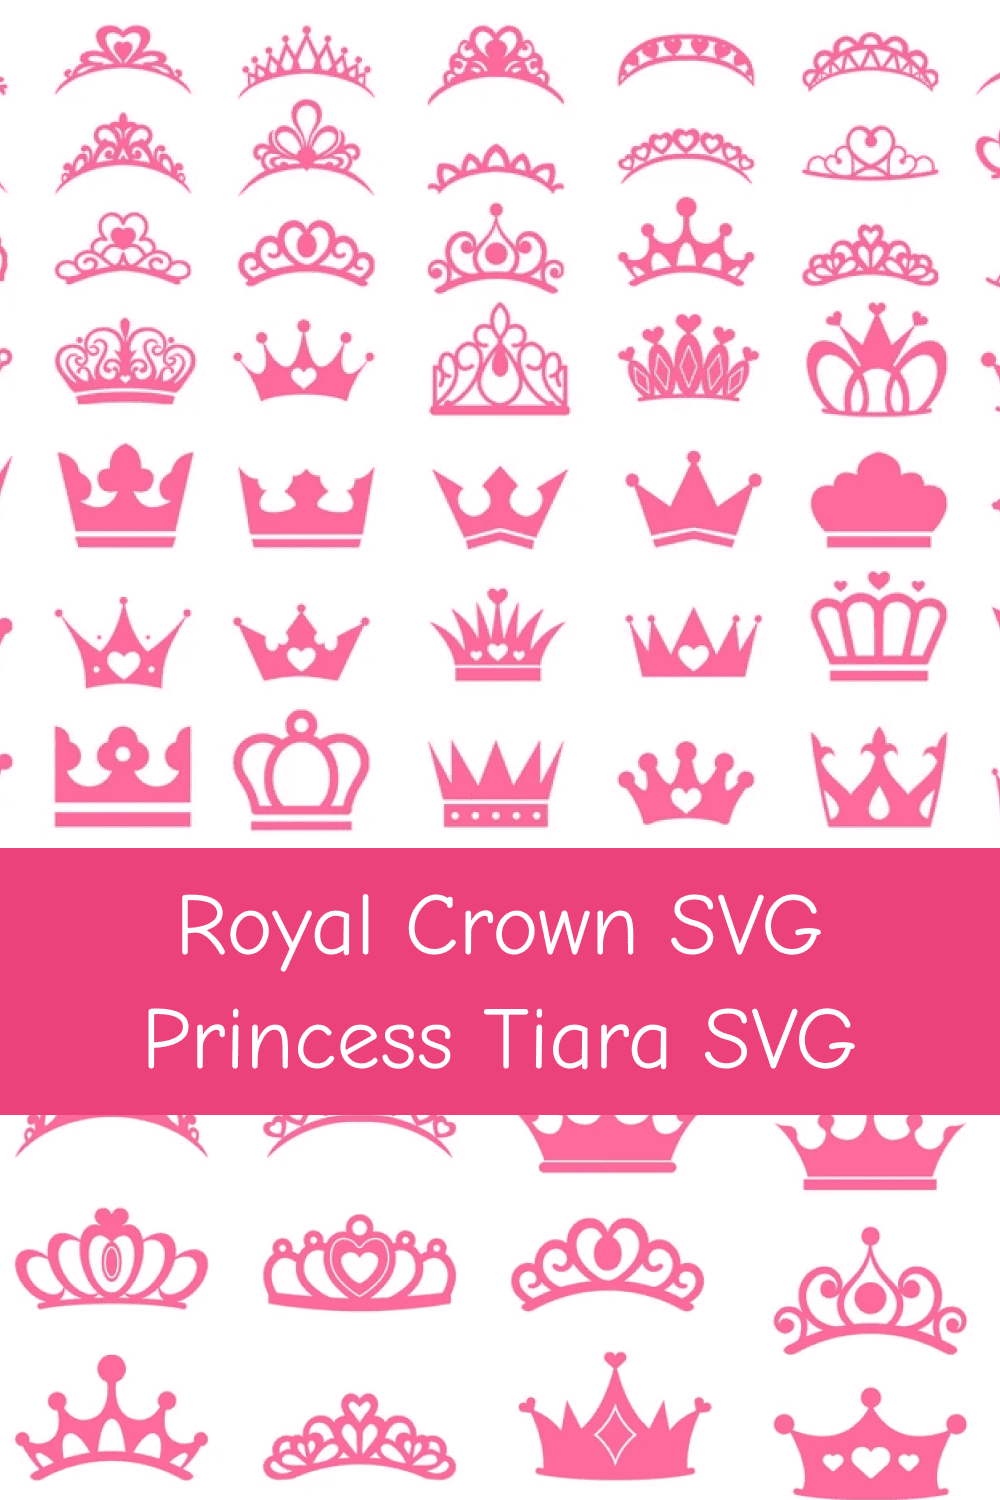 Cute pink princess tiara collection.